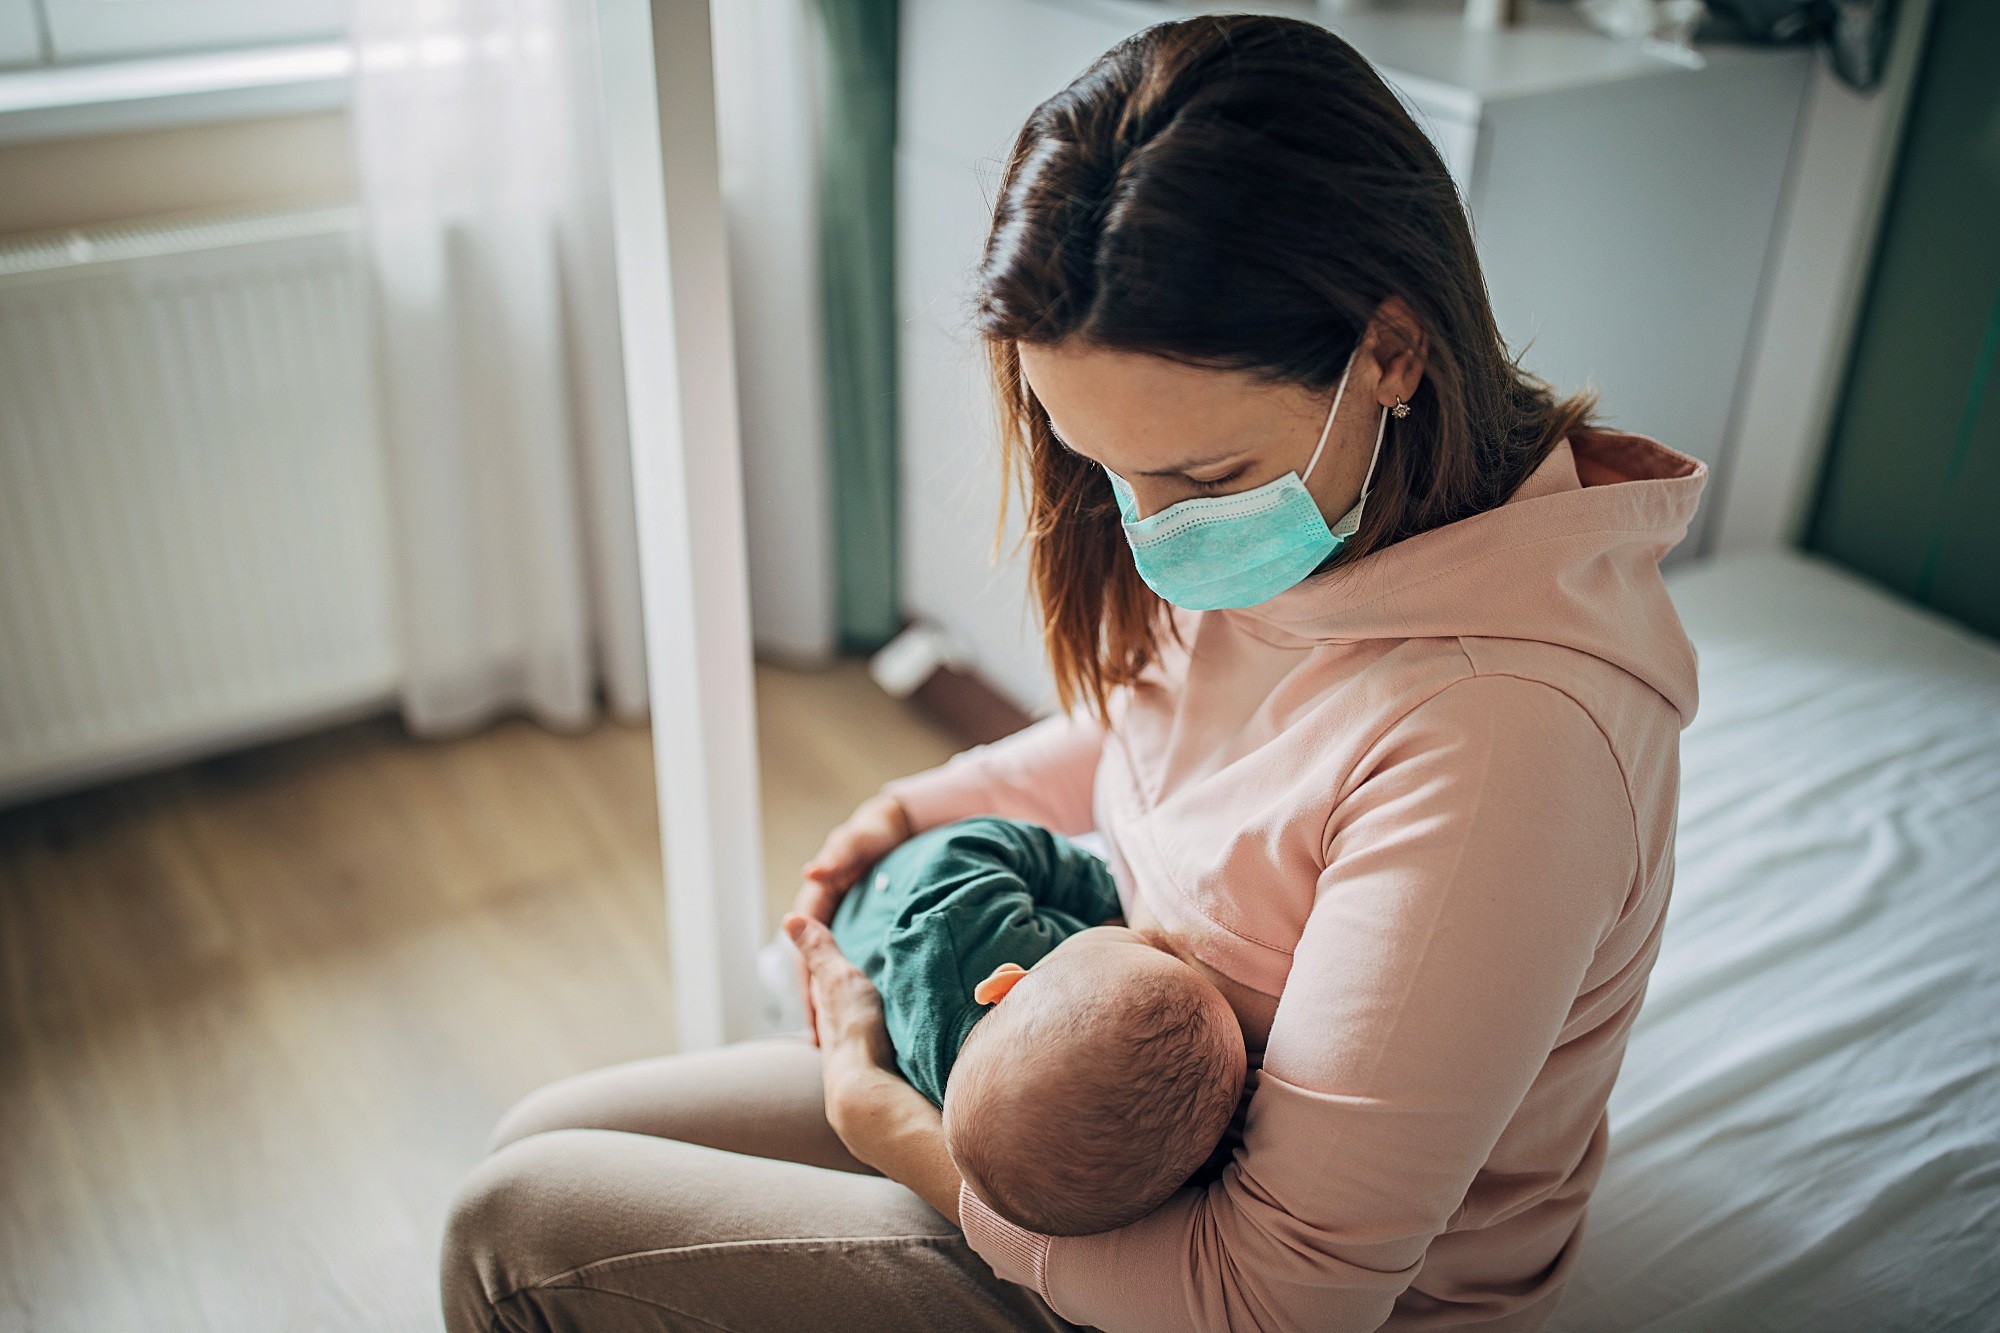 Amamentar o bebê pode ajudar a amenizar a dor na hora da vacina (Foto: Getty Images)